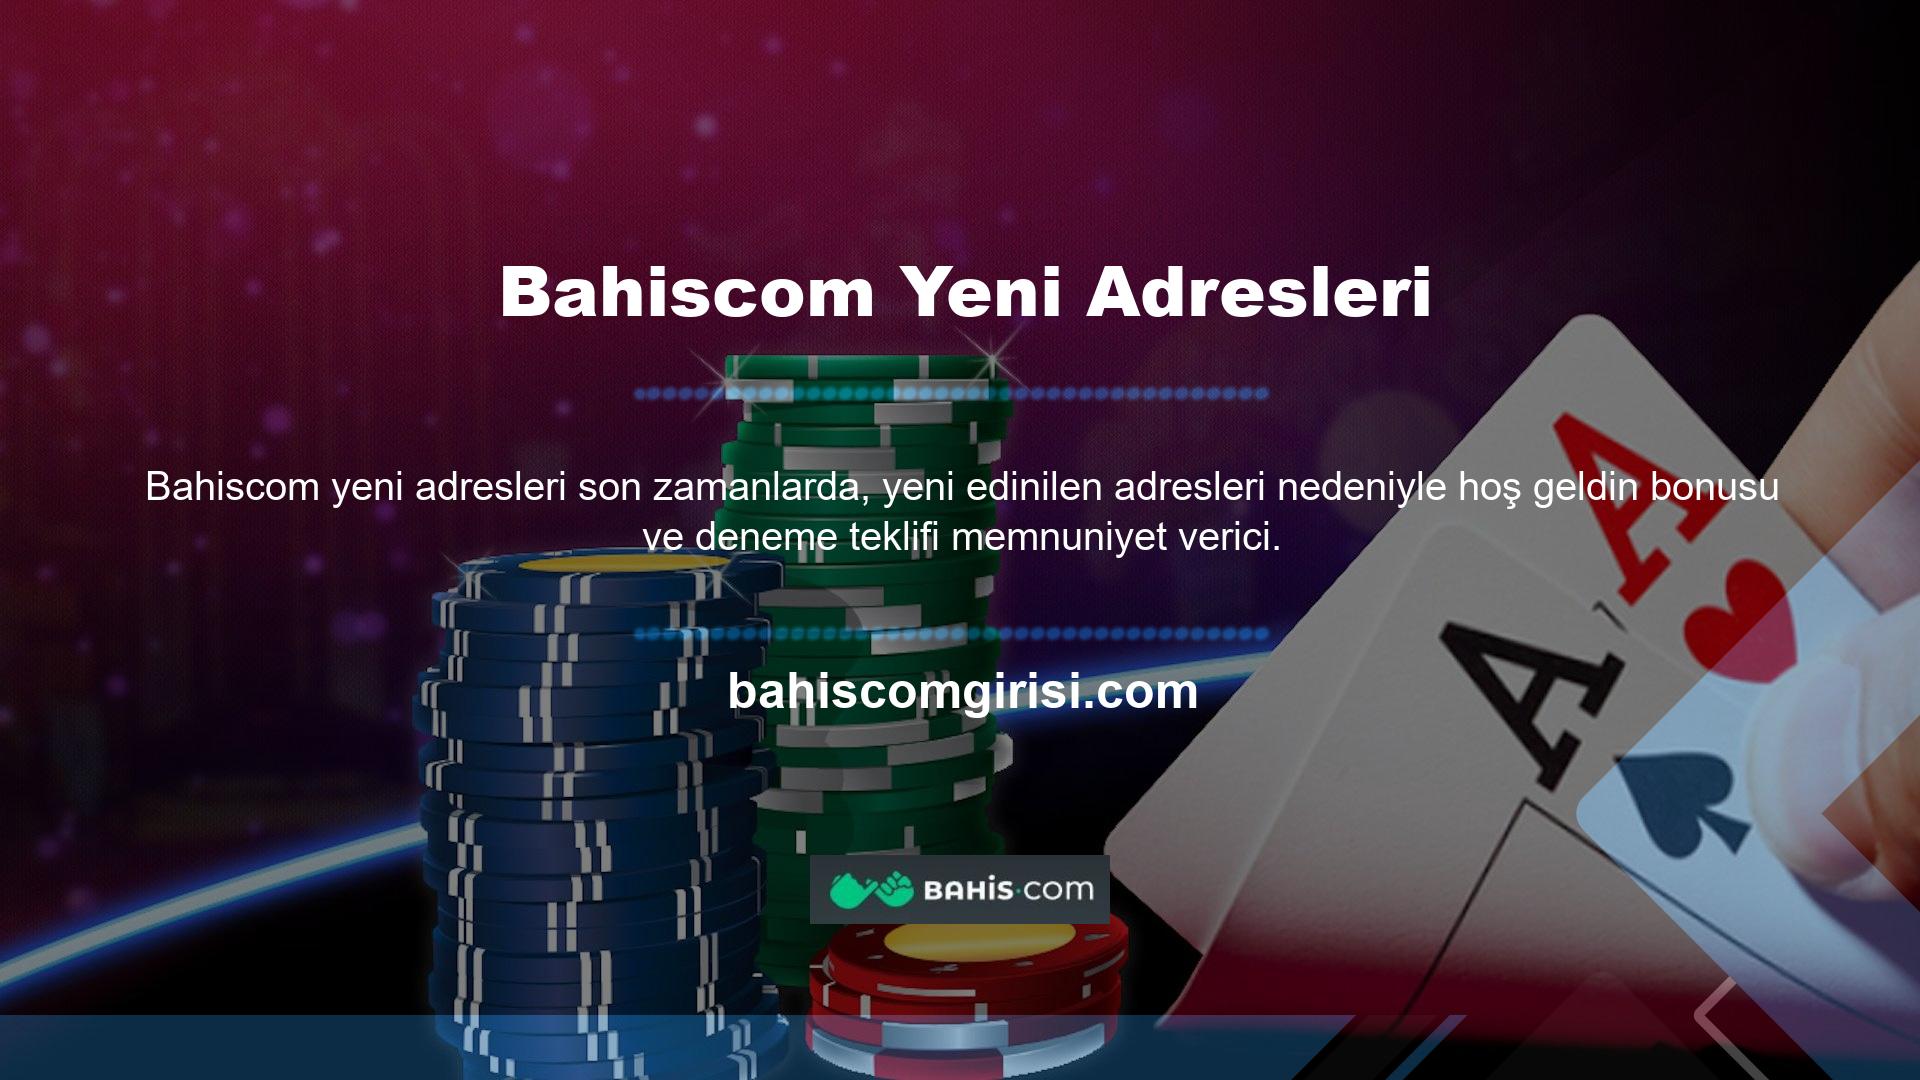 Bahiscom kullanıcılardan giriş bağlantısı isteğini bekliyor